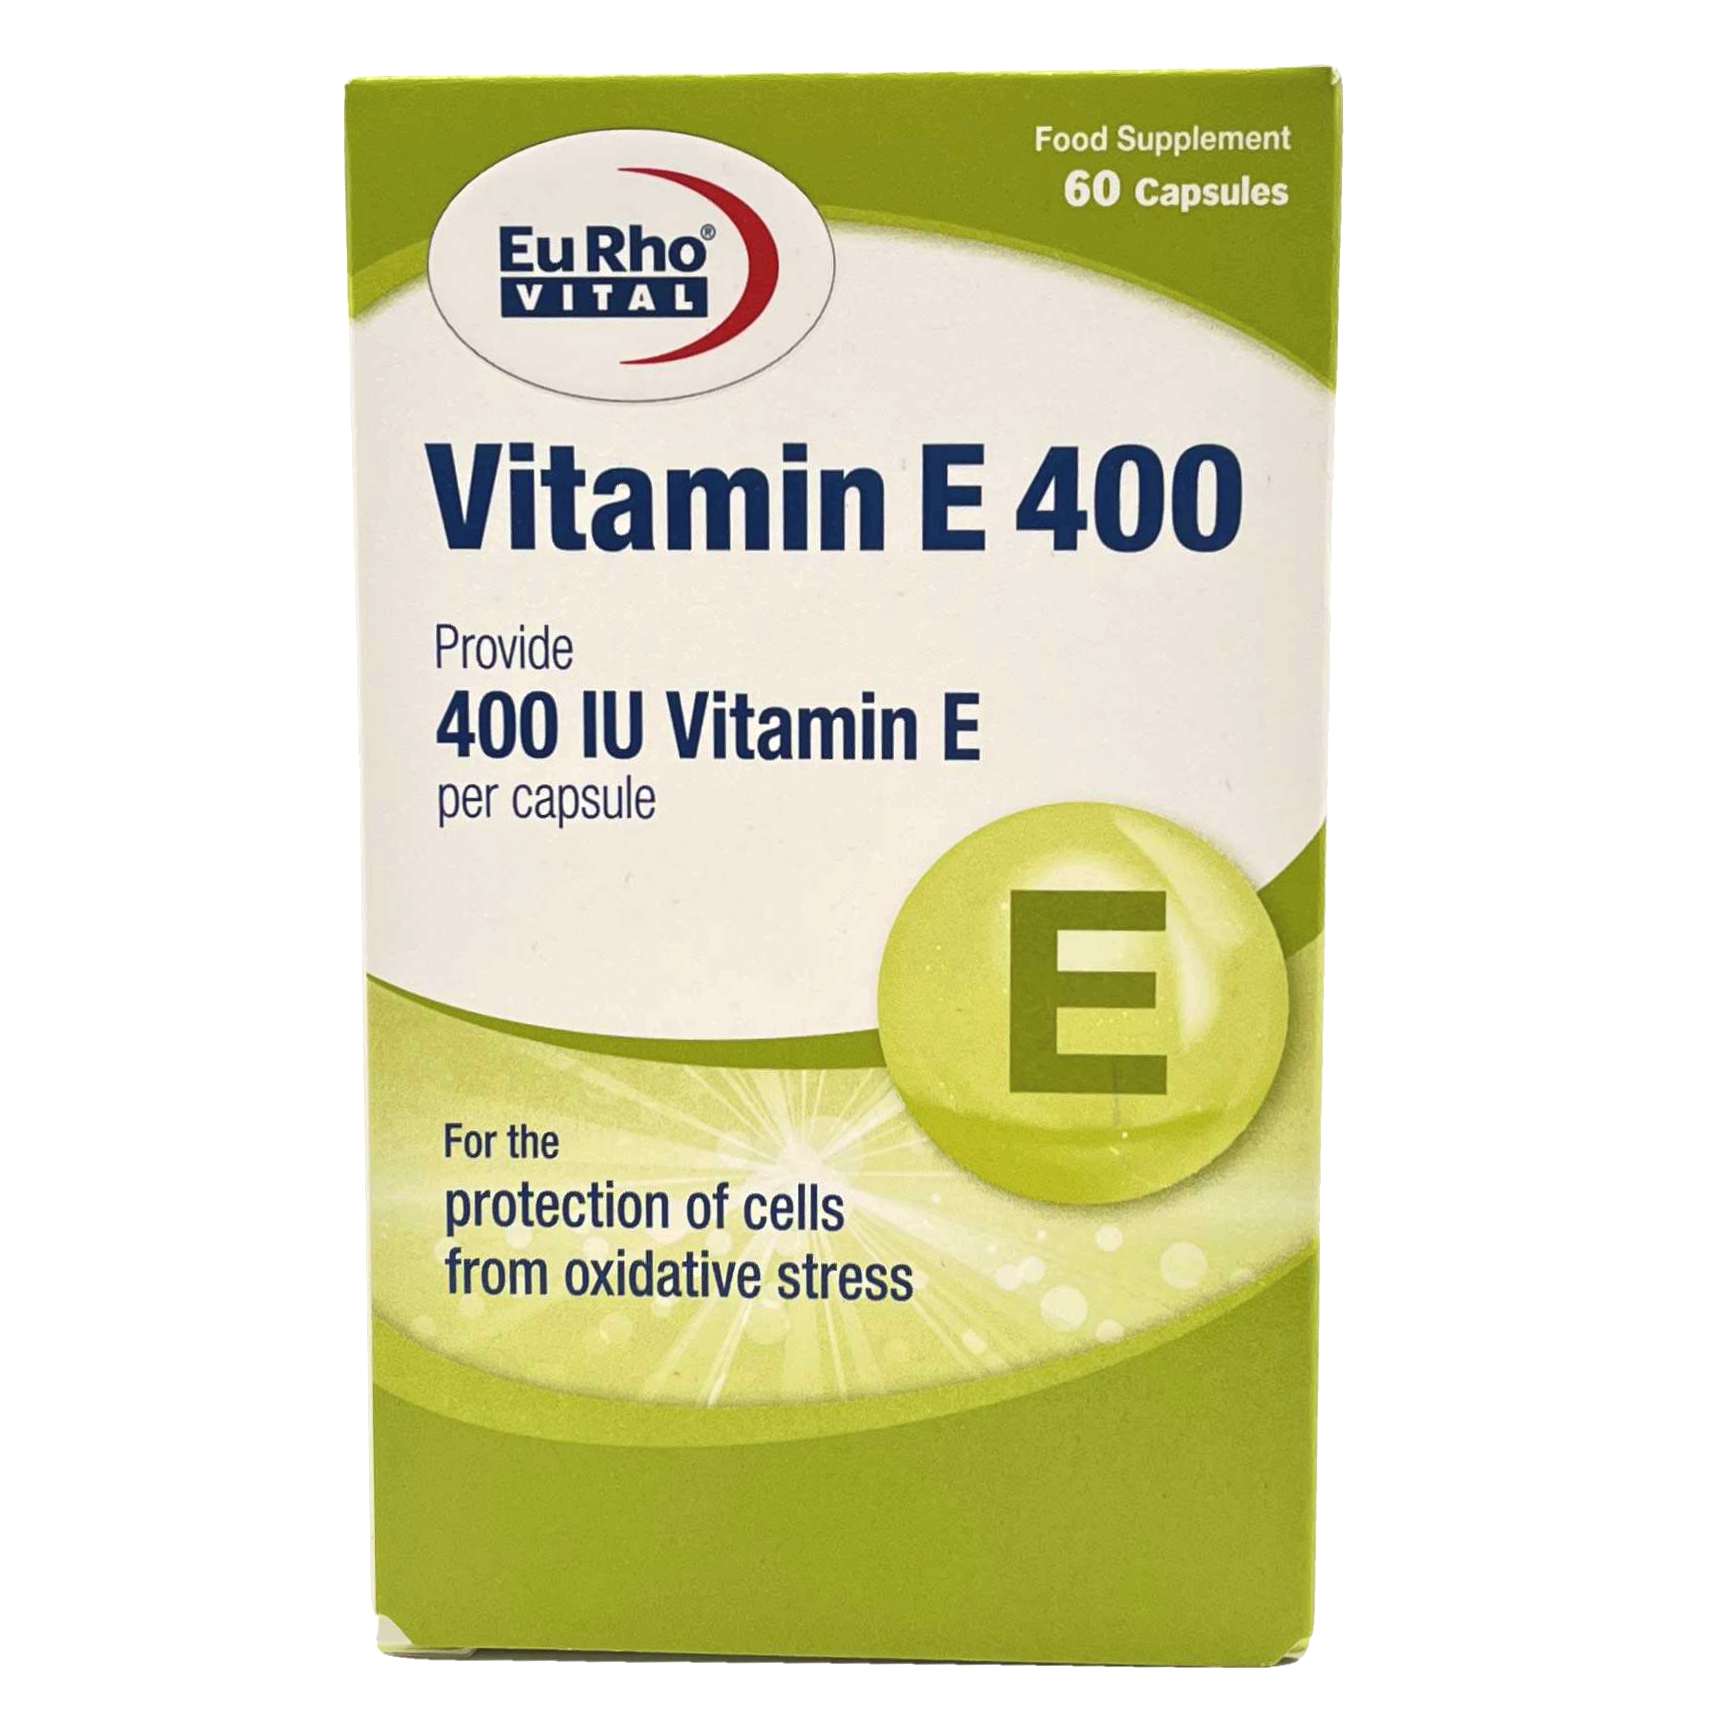 کپسول ژلاتینی ویتامین ای 400 یوروویتال EurhoVital Vitamin E